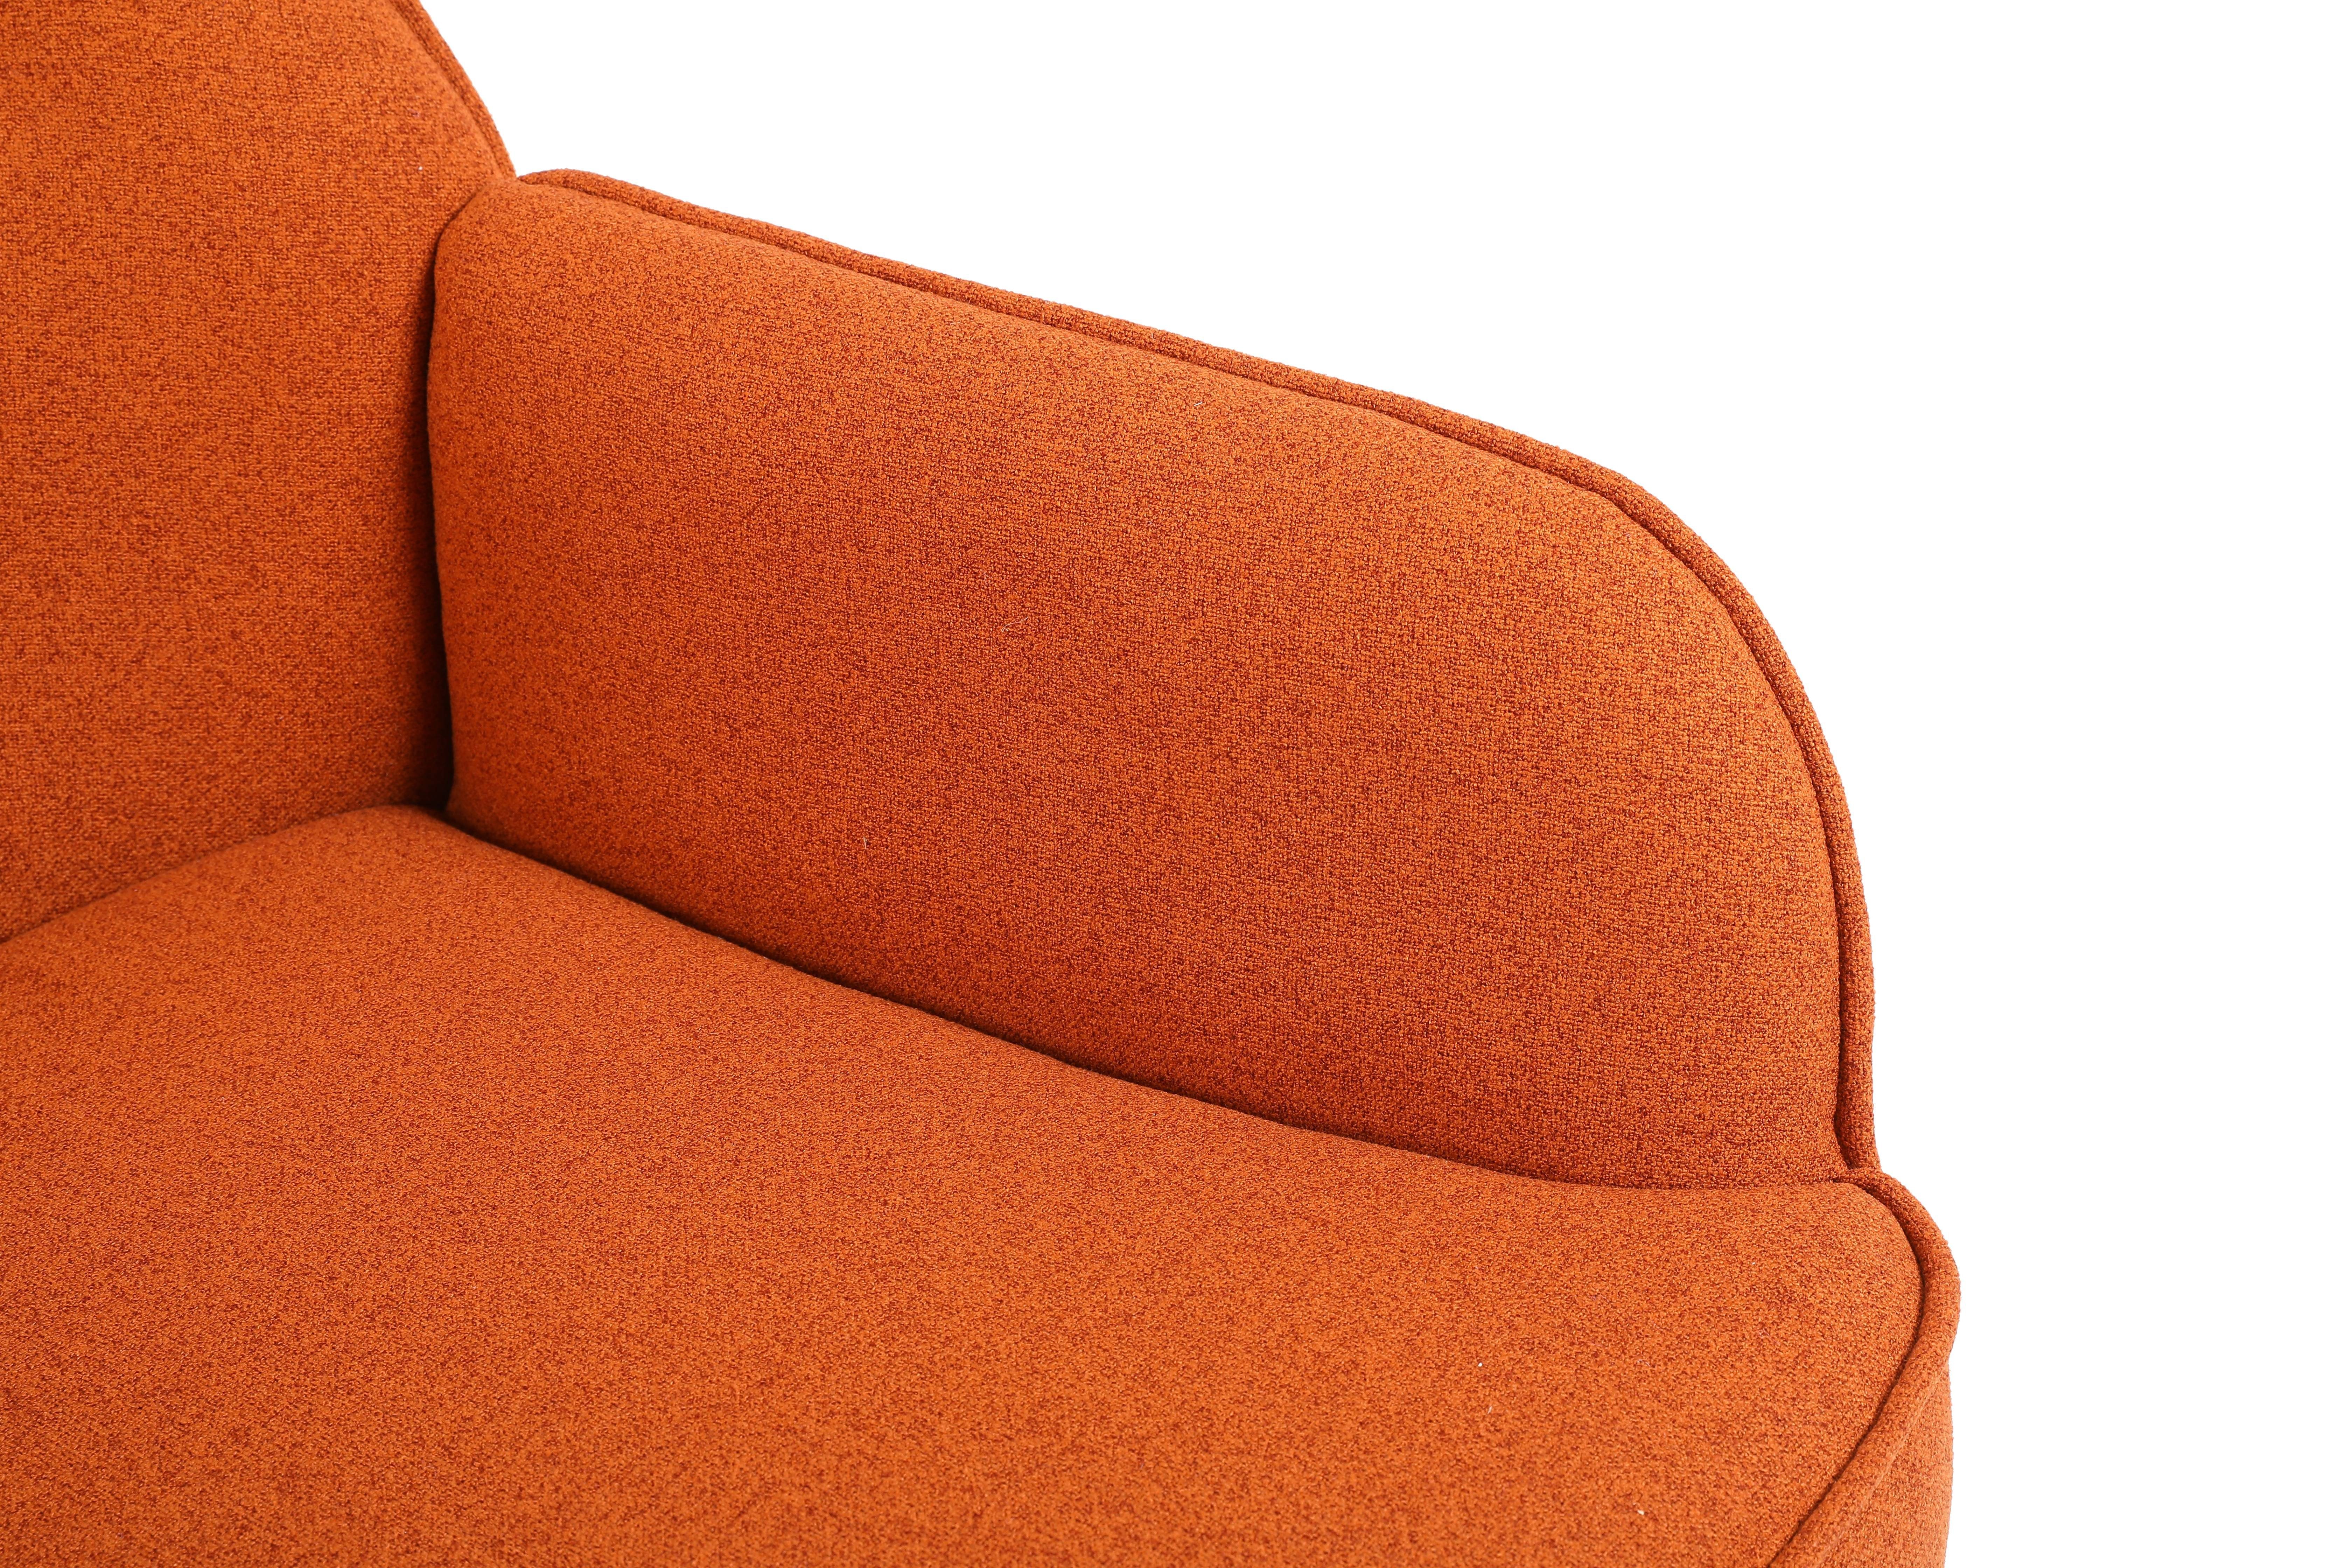 HAUSS SPLOE Loungesessel Ohrensessel Polstersessel Freizeit (Büro Stuhl Kaffee Einzelsofa mit Gepolsterte Fernsehsessel orange Metallbeinen Einzelsofa Stuhl)